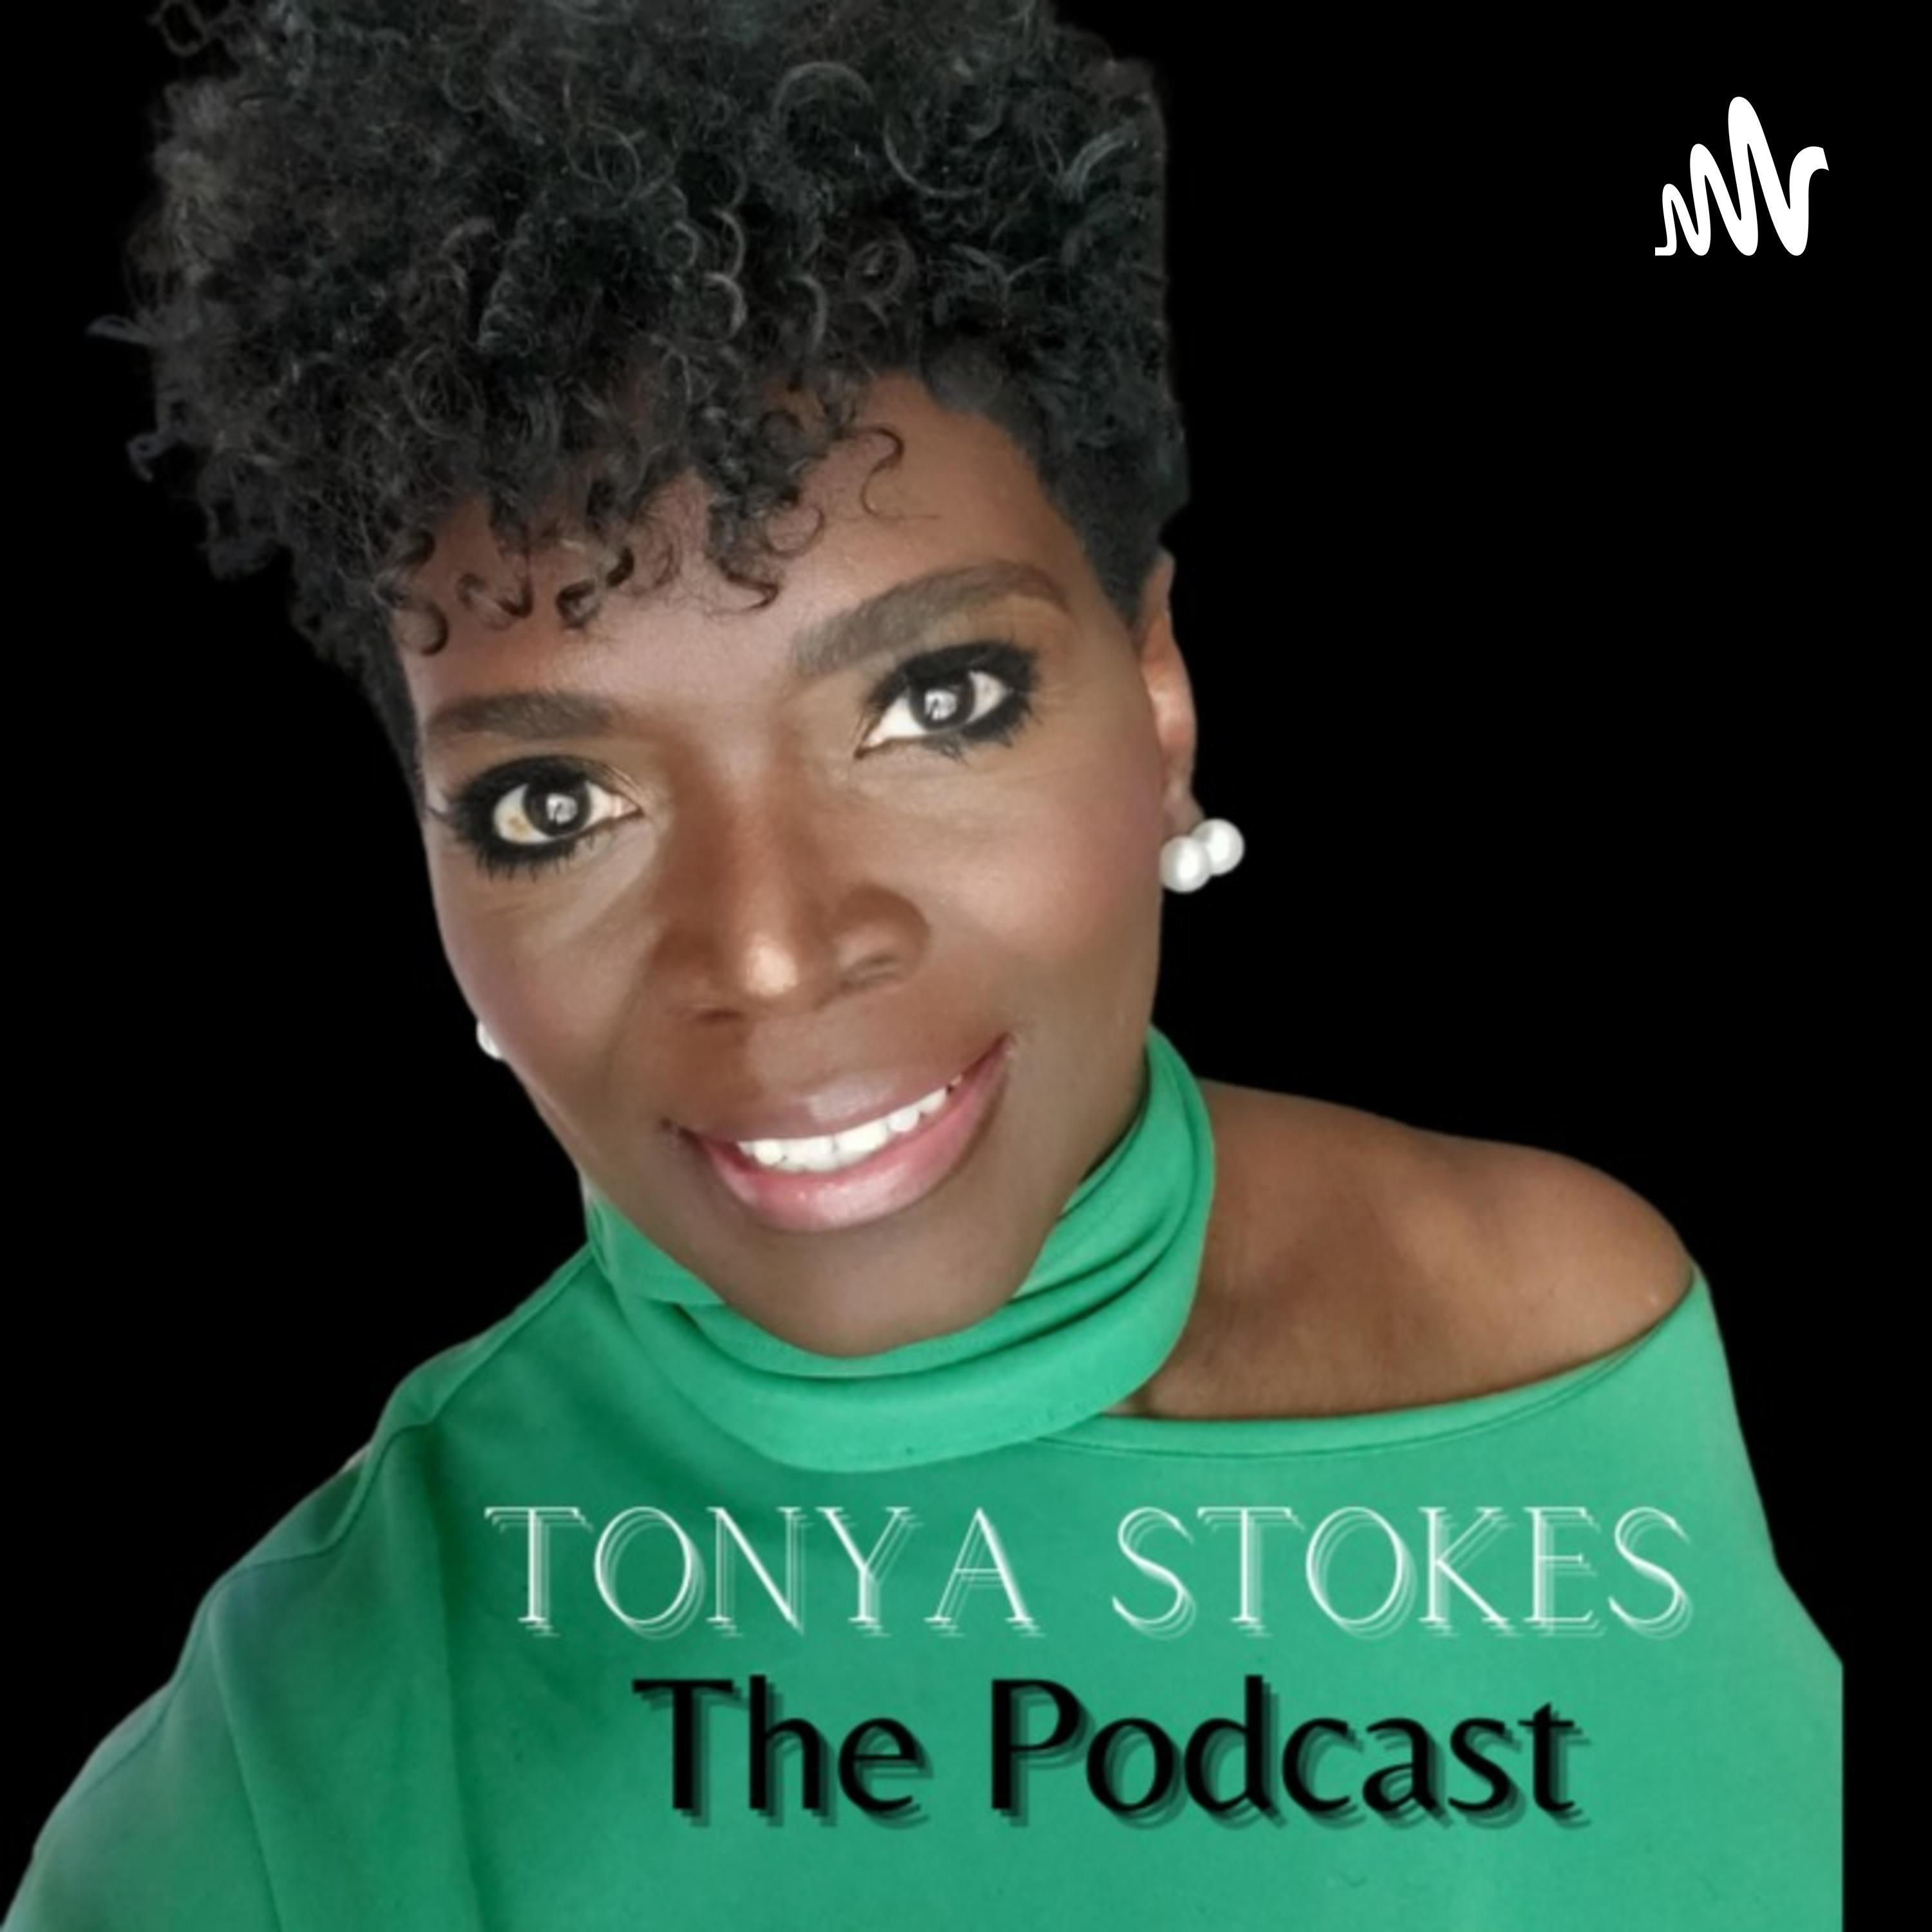 The TONYA STOKES Podcast